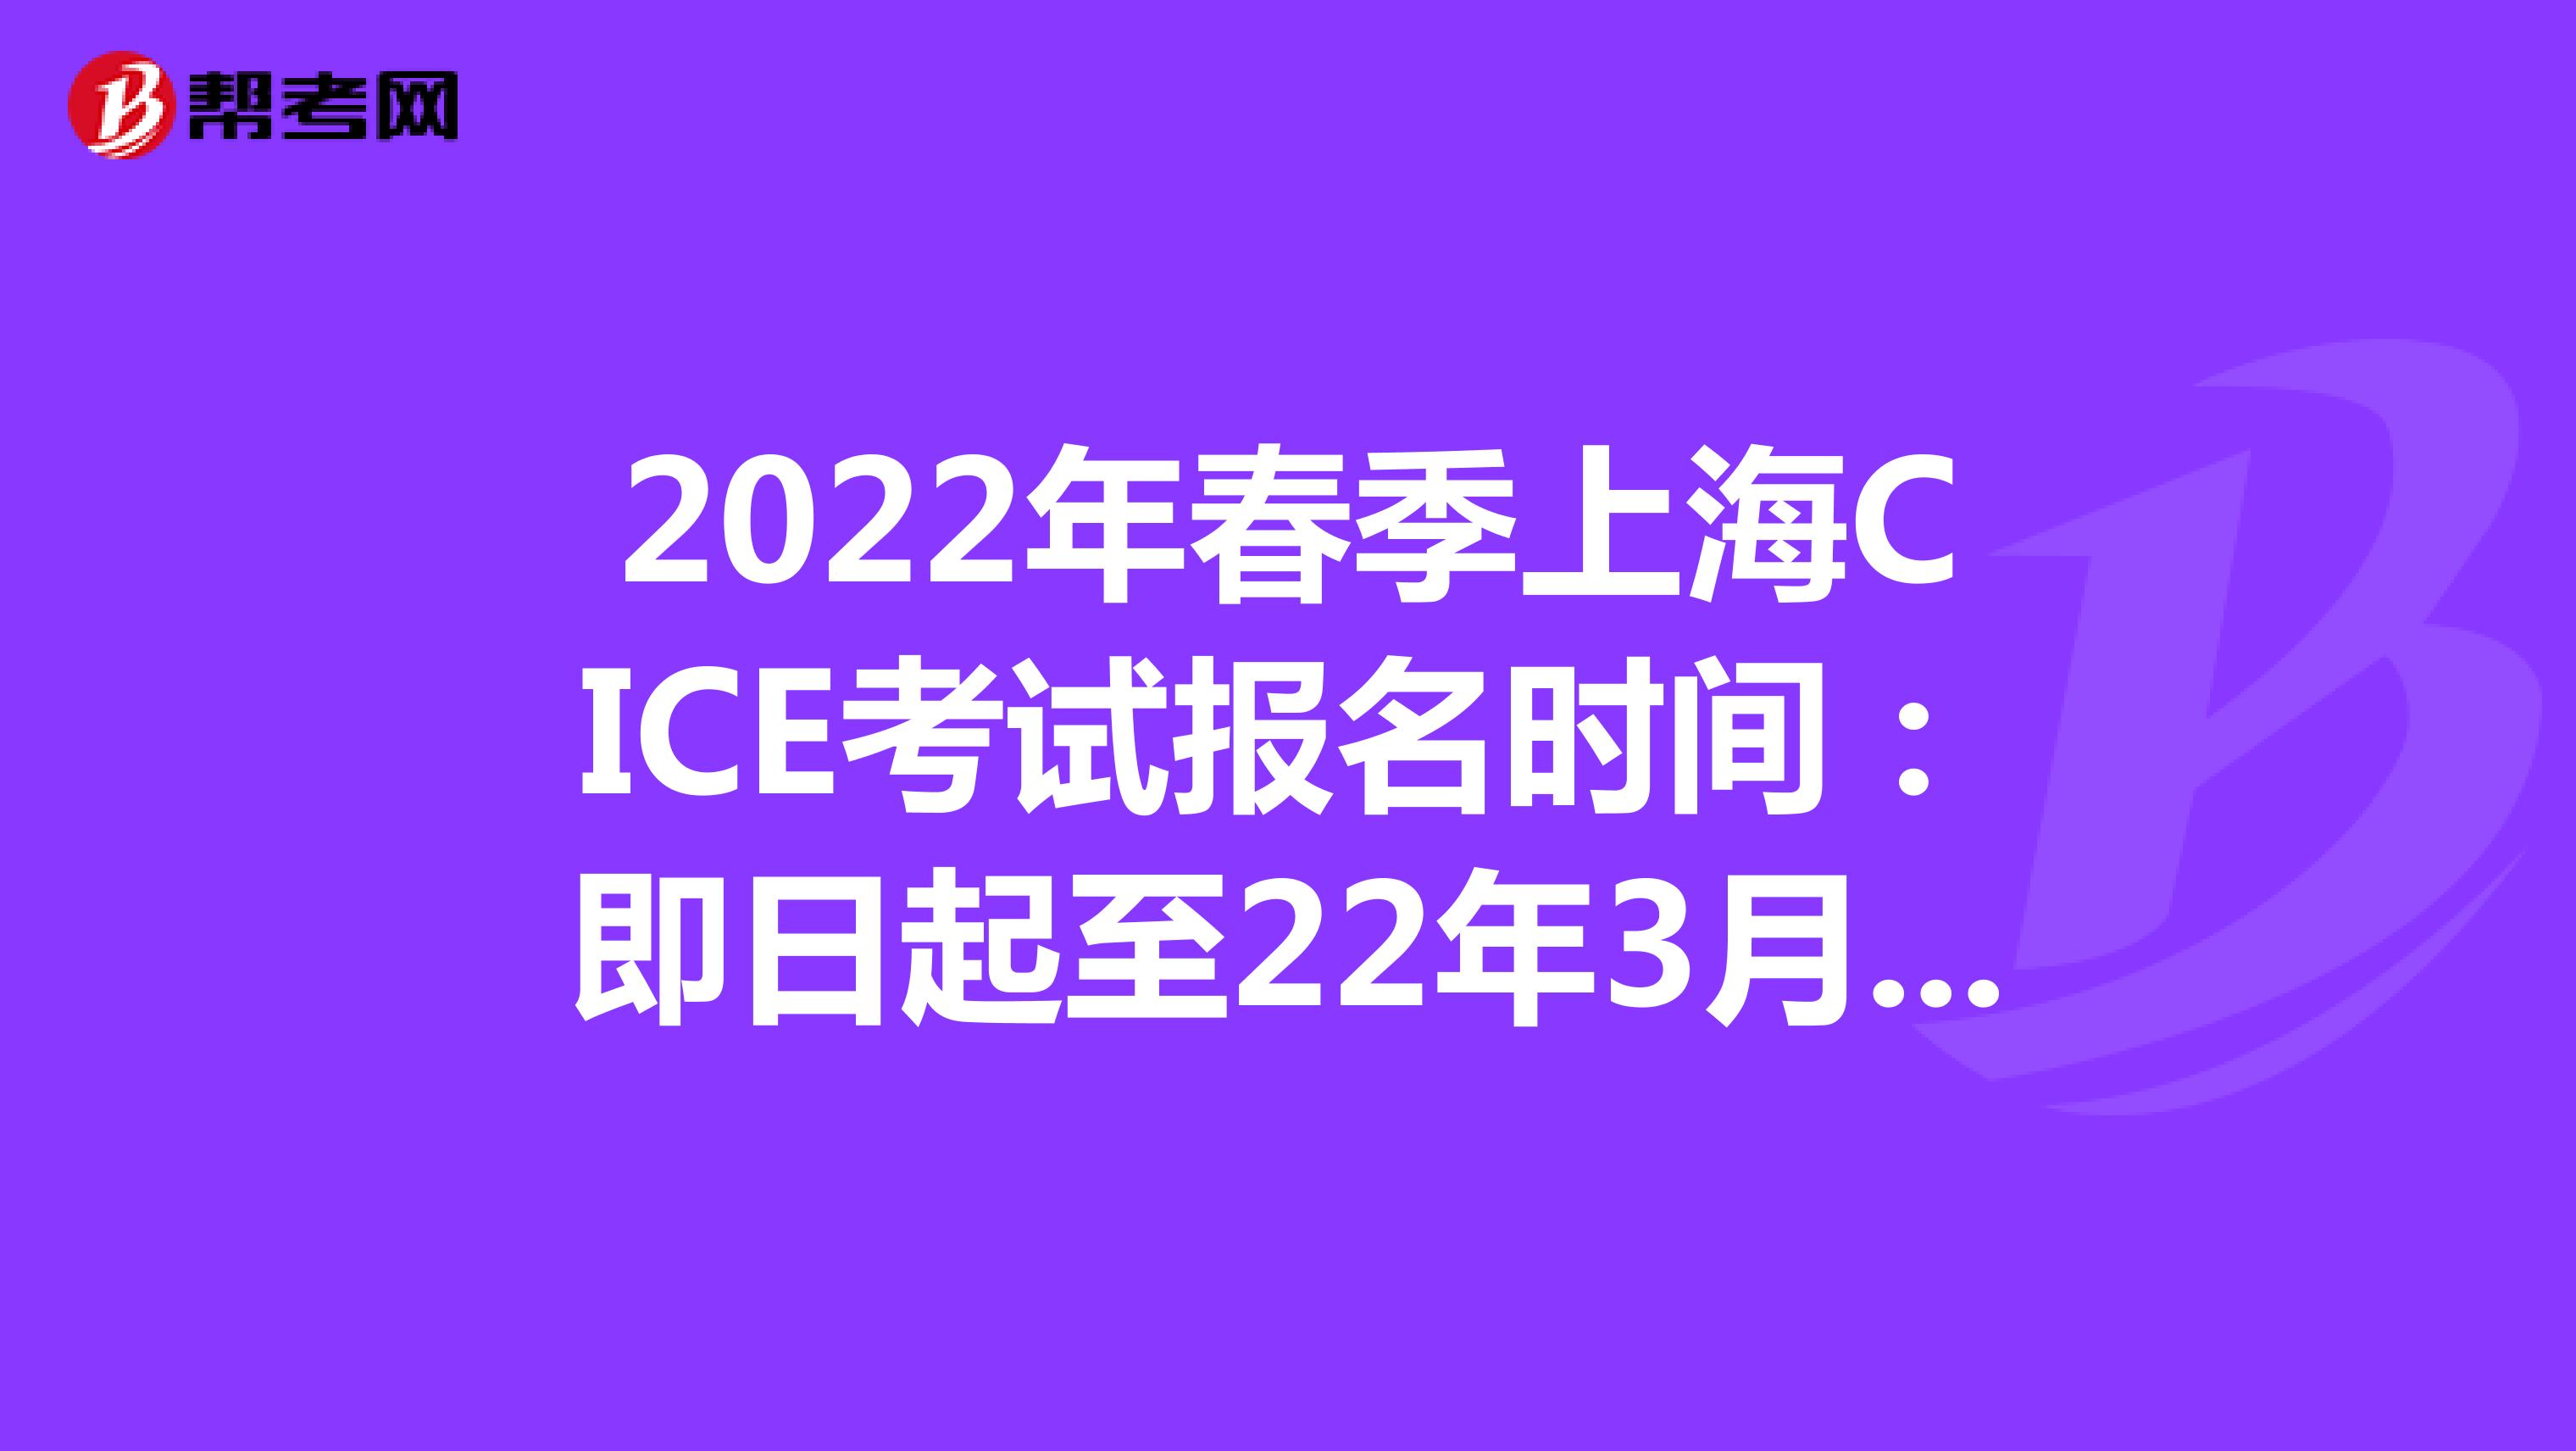 2022年春季上海CICE考试报名时间：即日起至22年3月31日